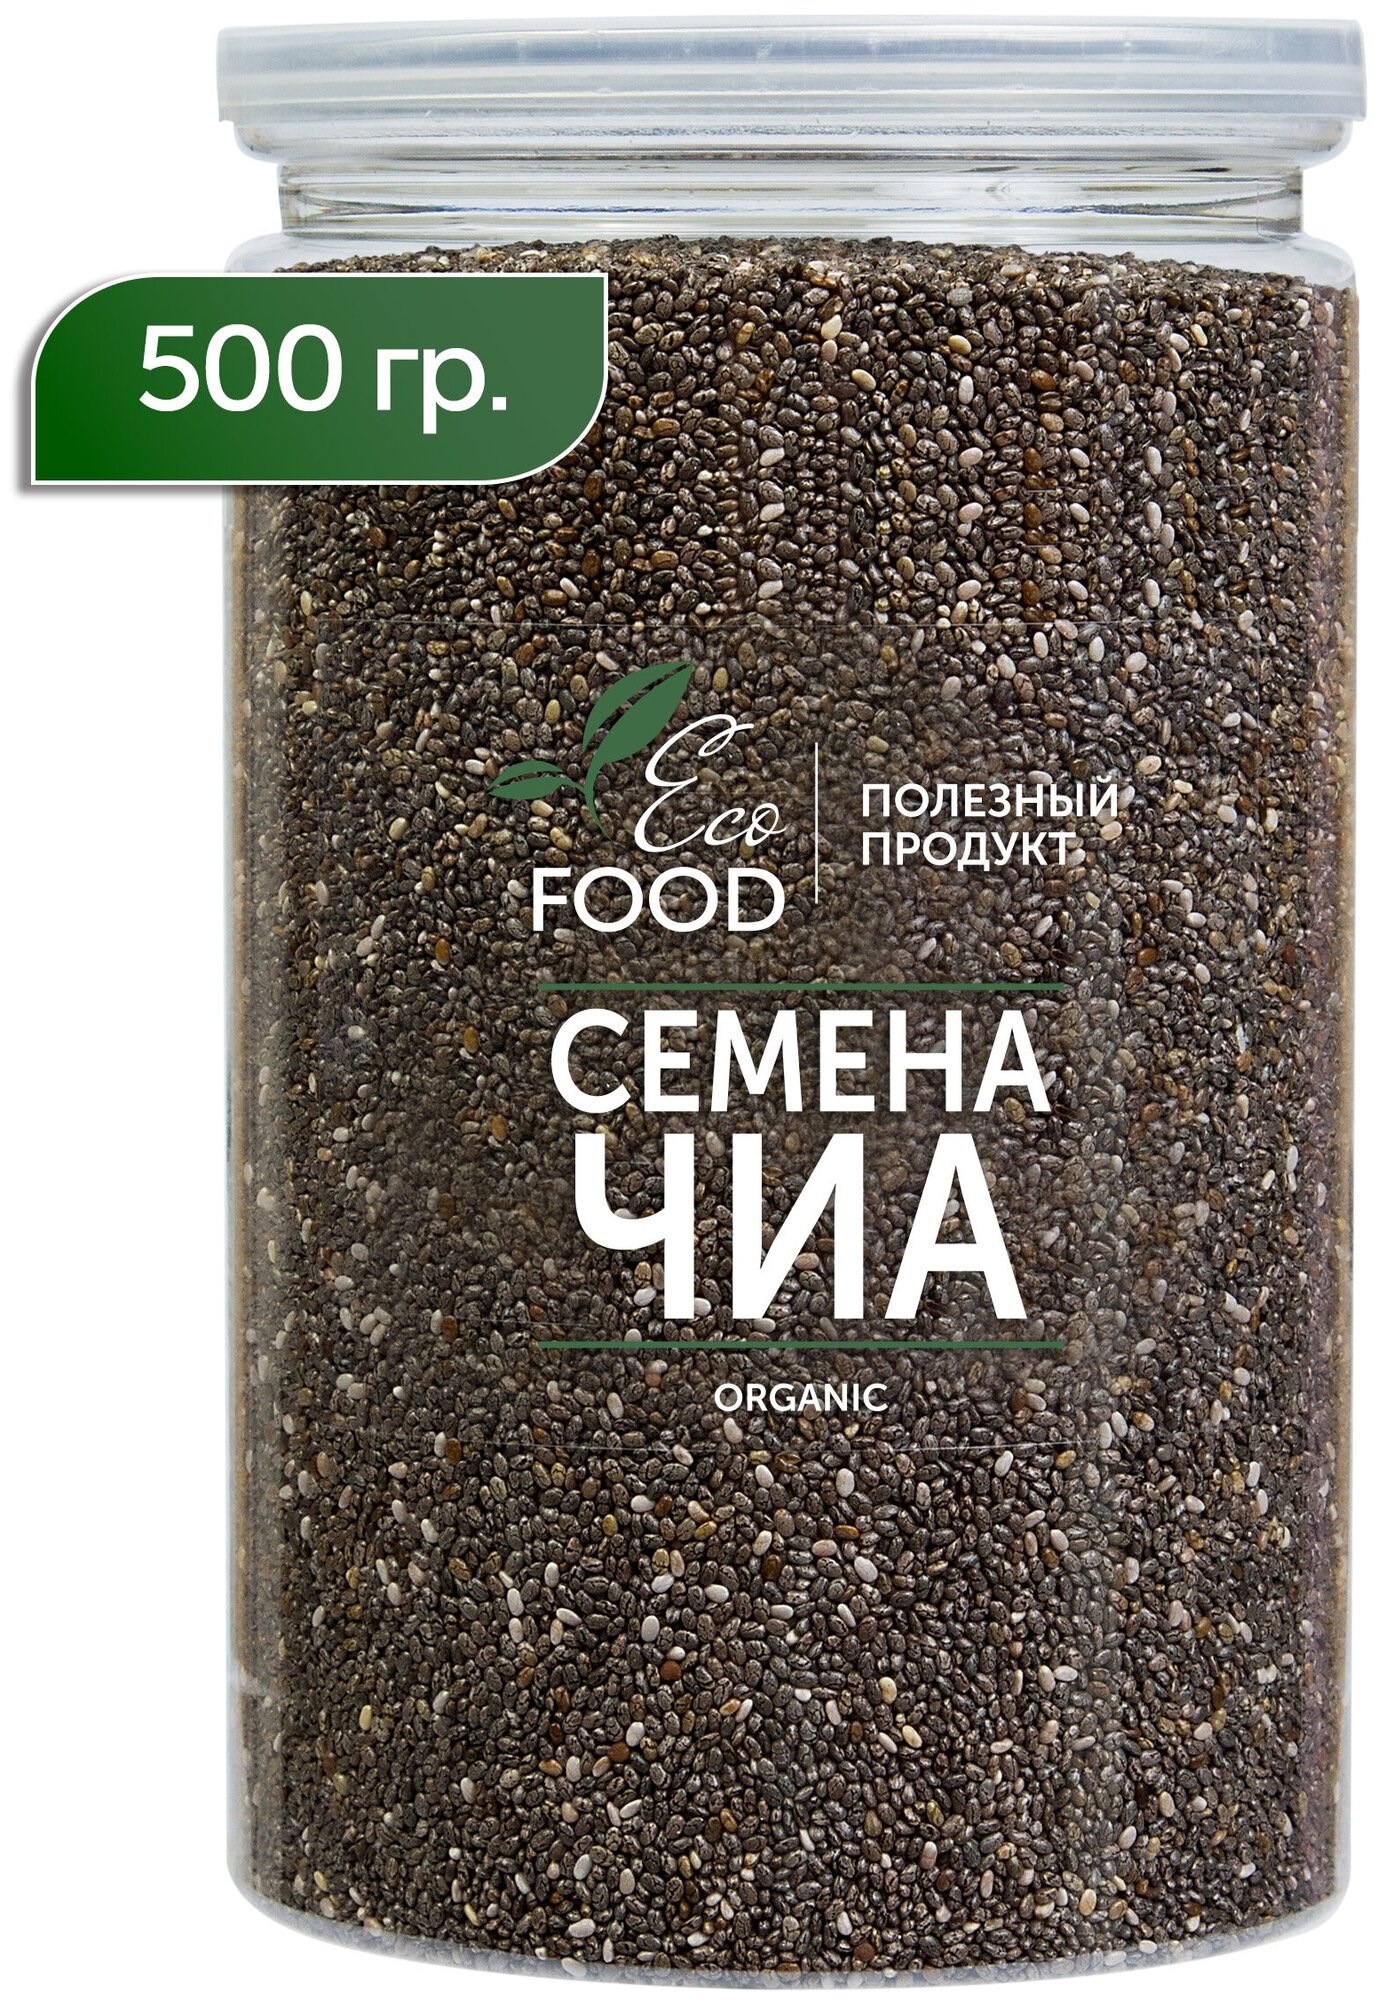 Семена чиа Chia Суперфуд для похудения и здоровья 500 гр Eco Food - Полезный продукт